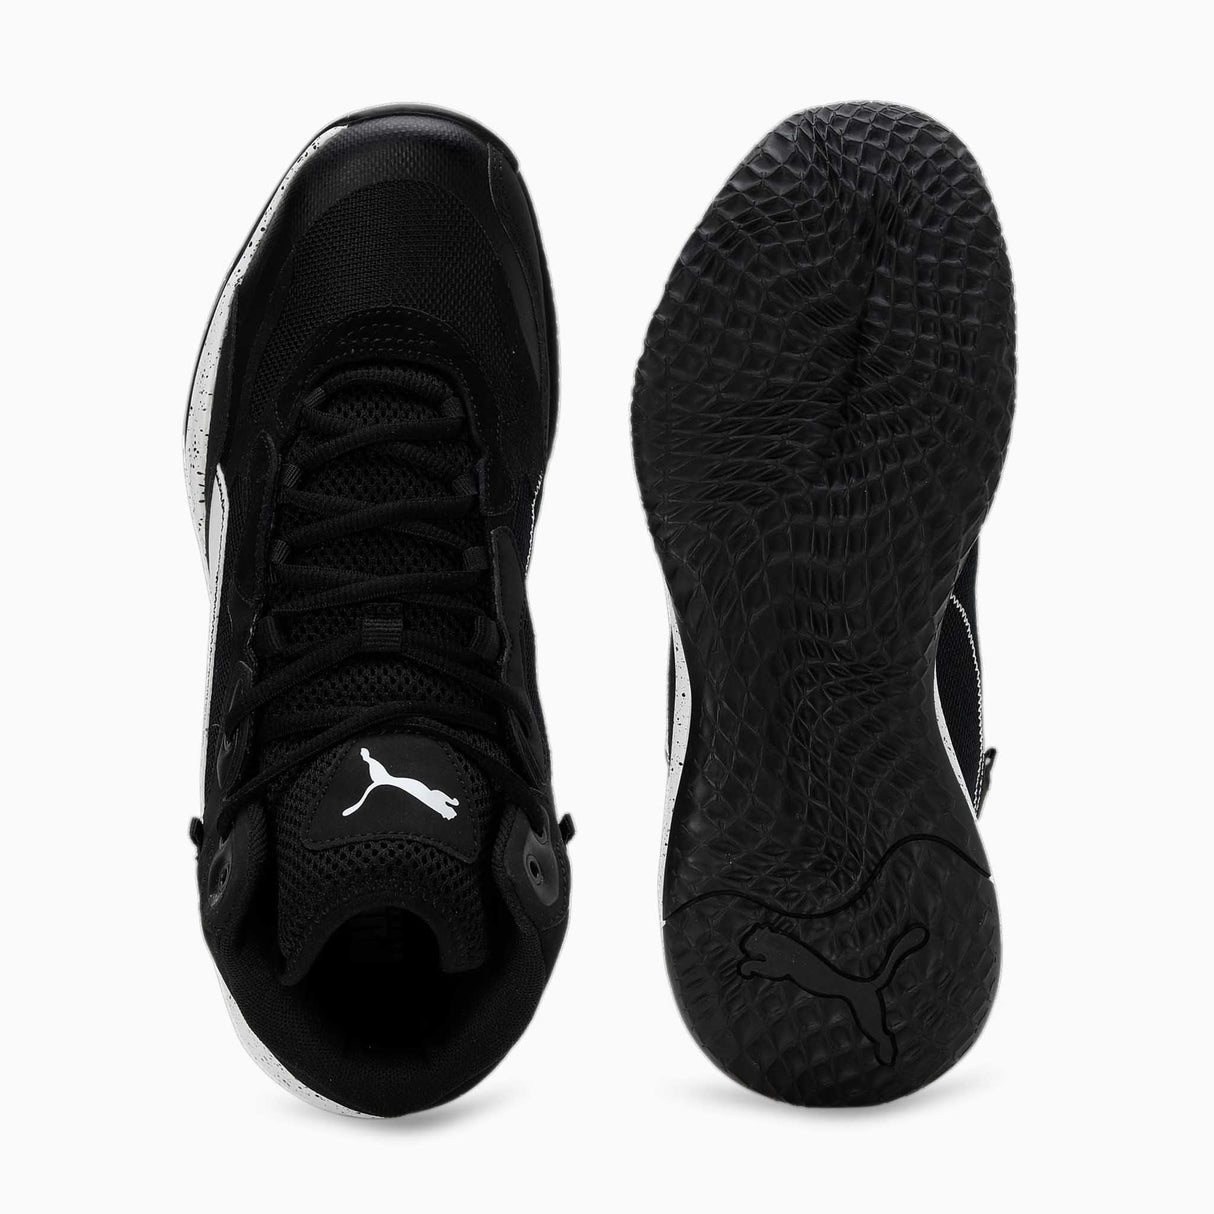 Puma Playmaker Pro Mid Splatter souliers de basketball - noir / blanc paire